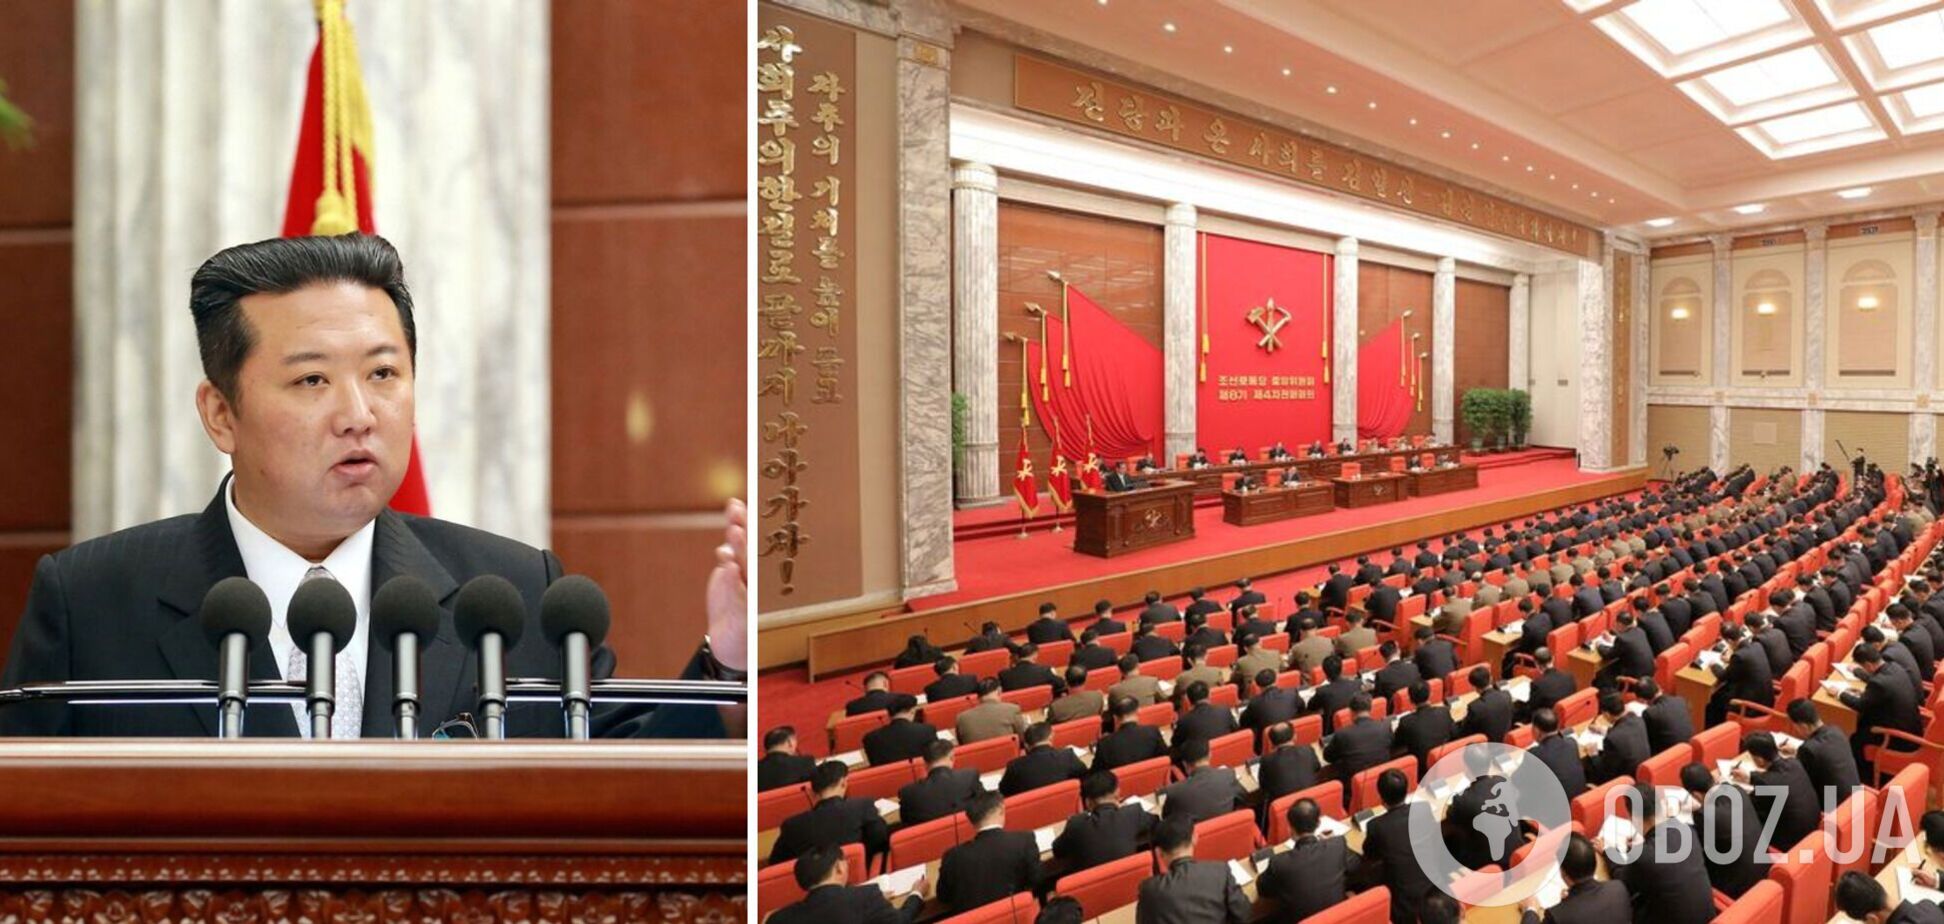 Еще больше похудел: появились новые фото северокорейского диктатора Ким Чен Ына